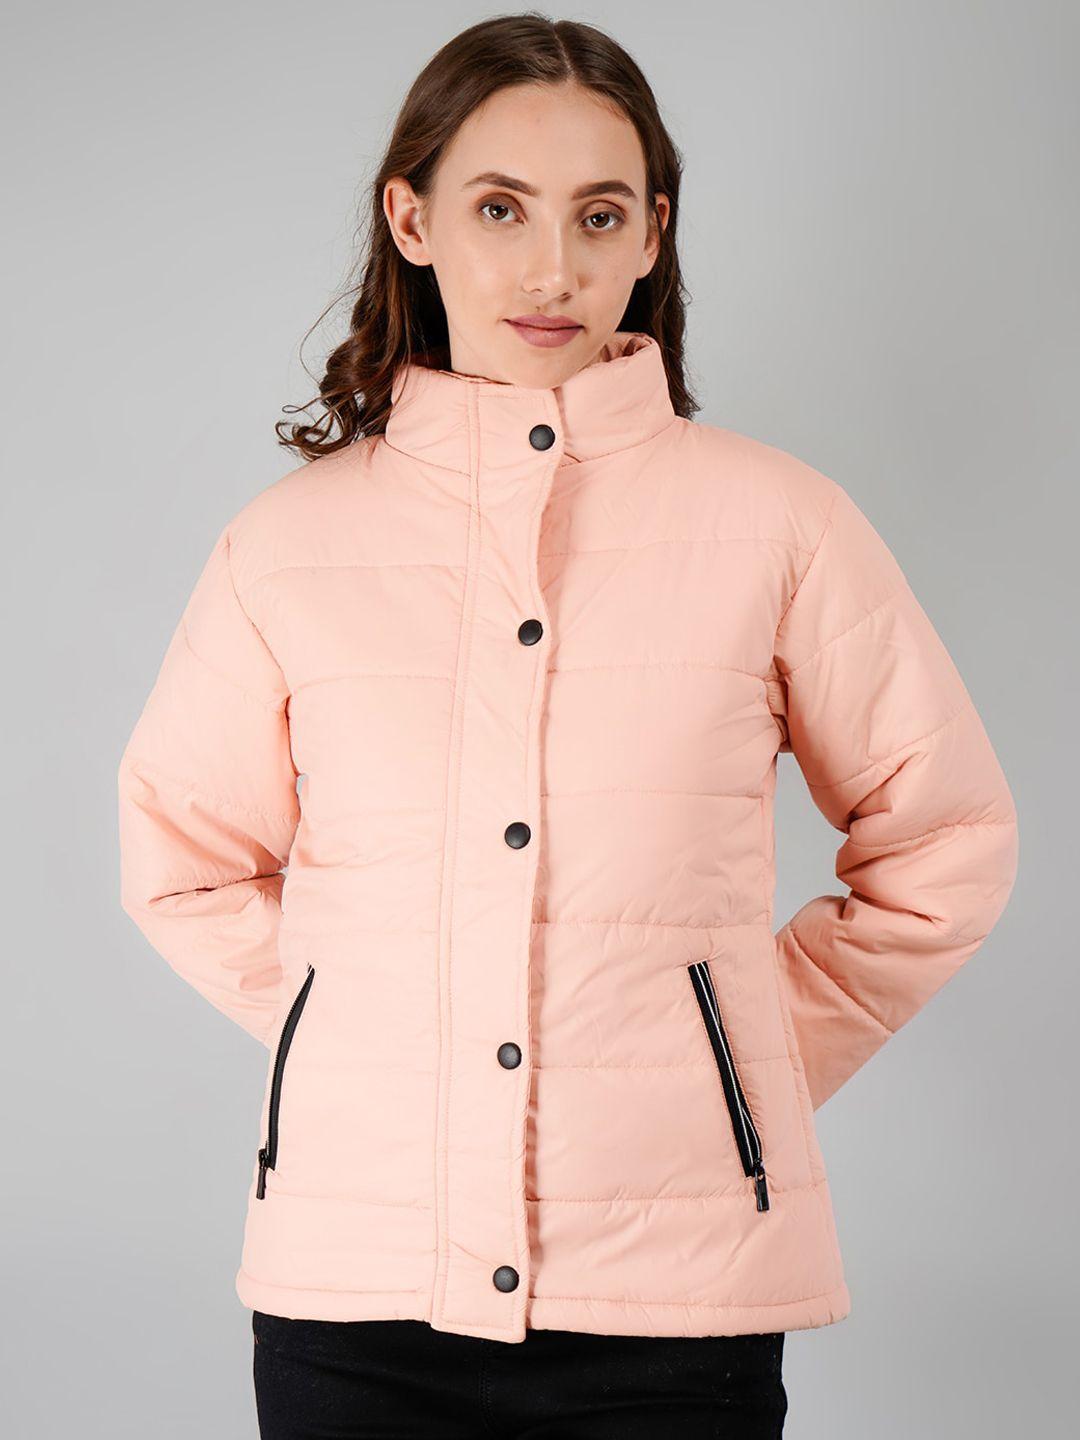 besimple women lightweight outdoor puffer jacket